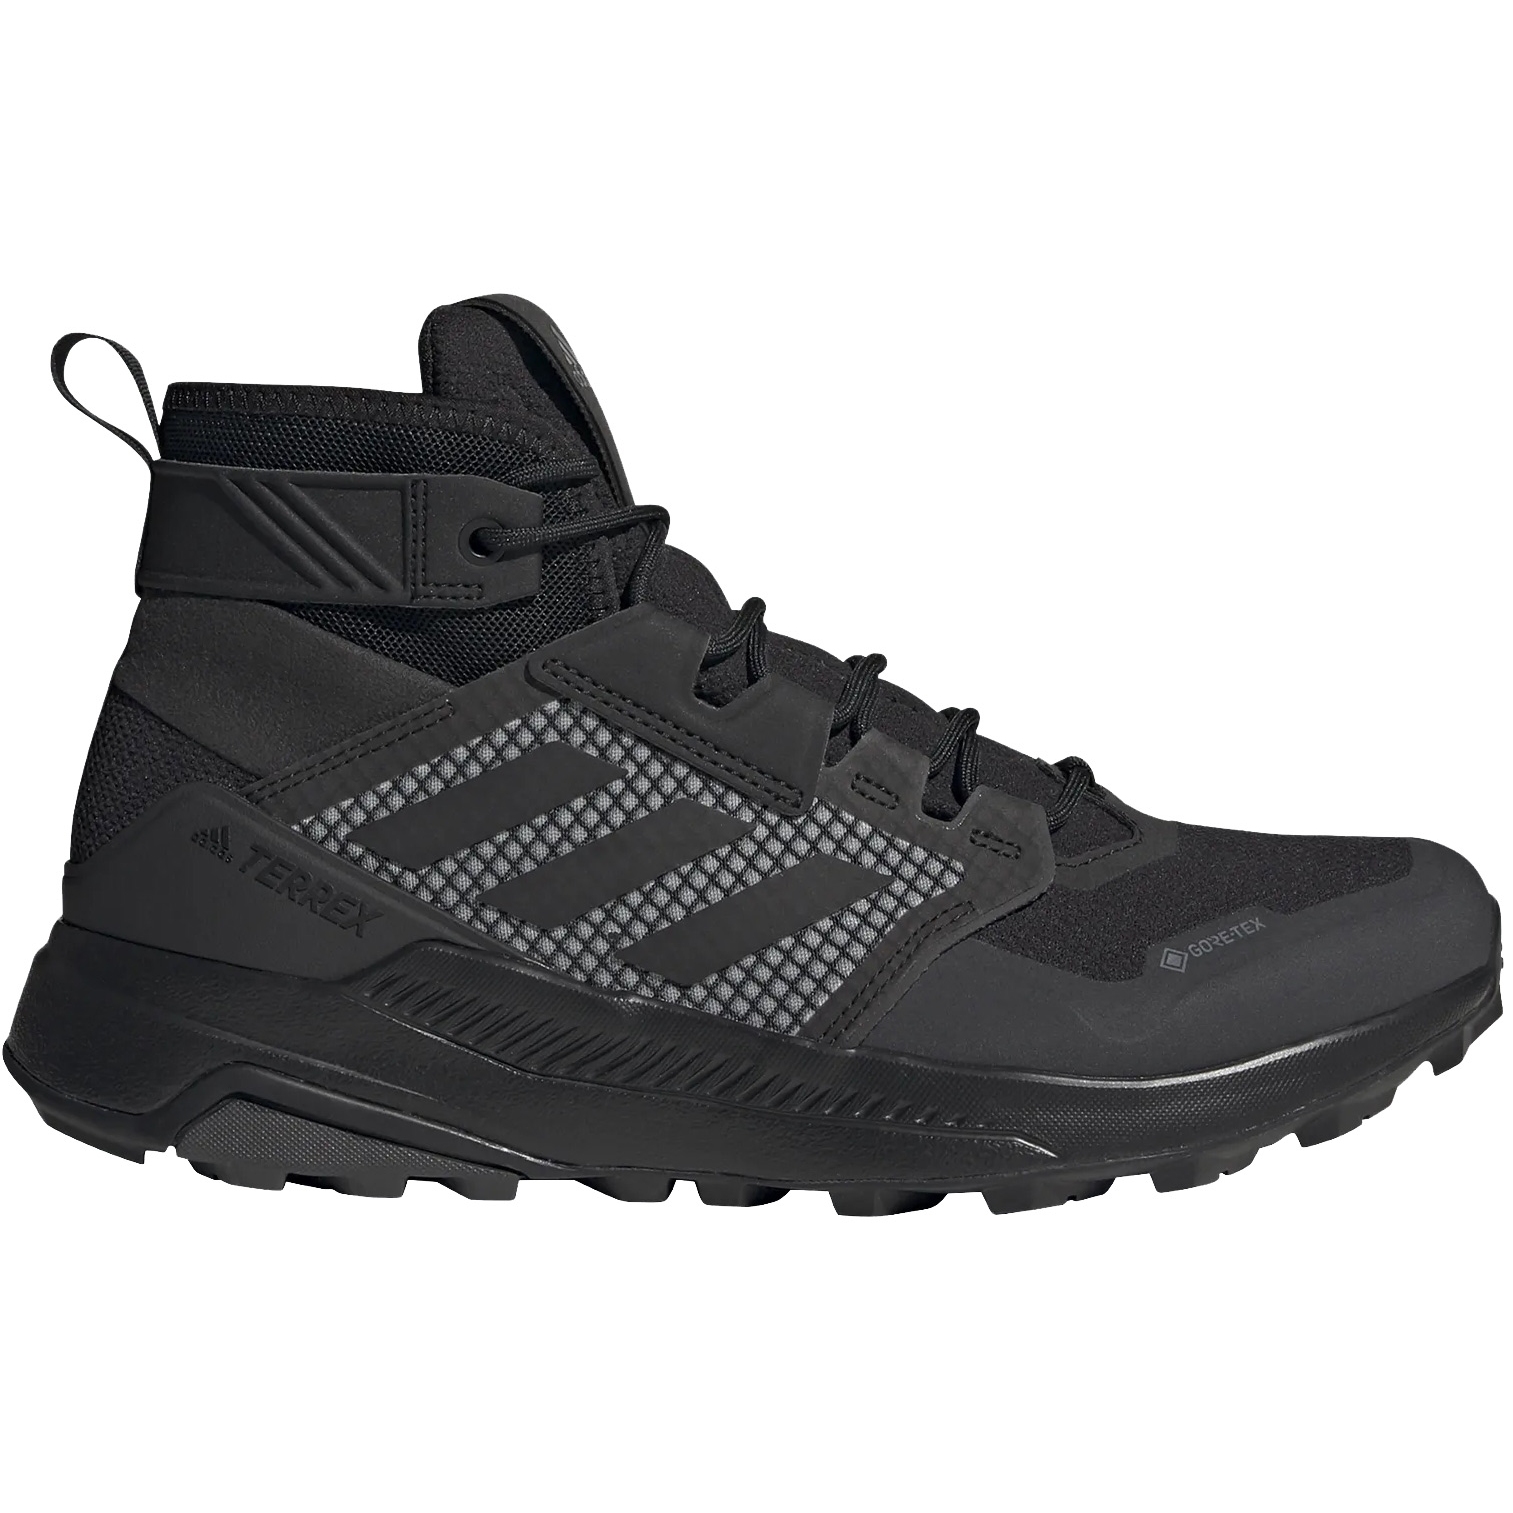 Bild von adidas Männer TERREX Trailmaker Mid GORE-TEX Wanderschuhe - core black/core black/dgh solid grey FY2229